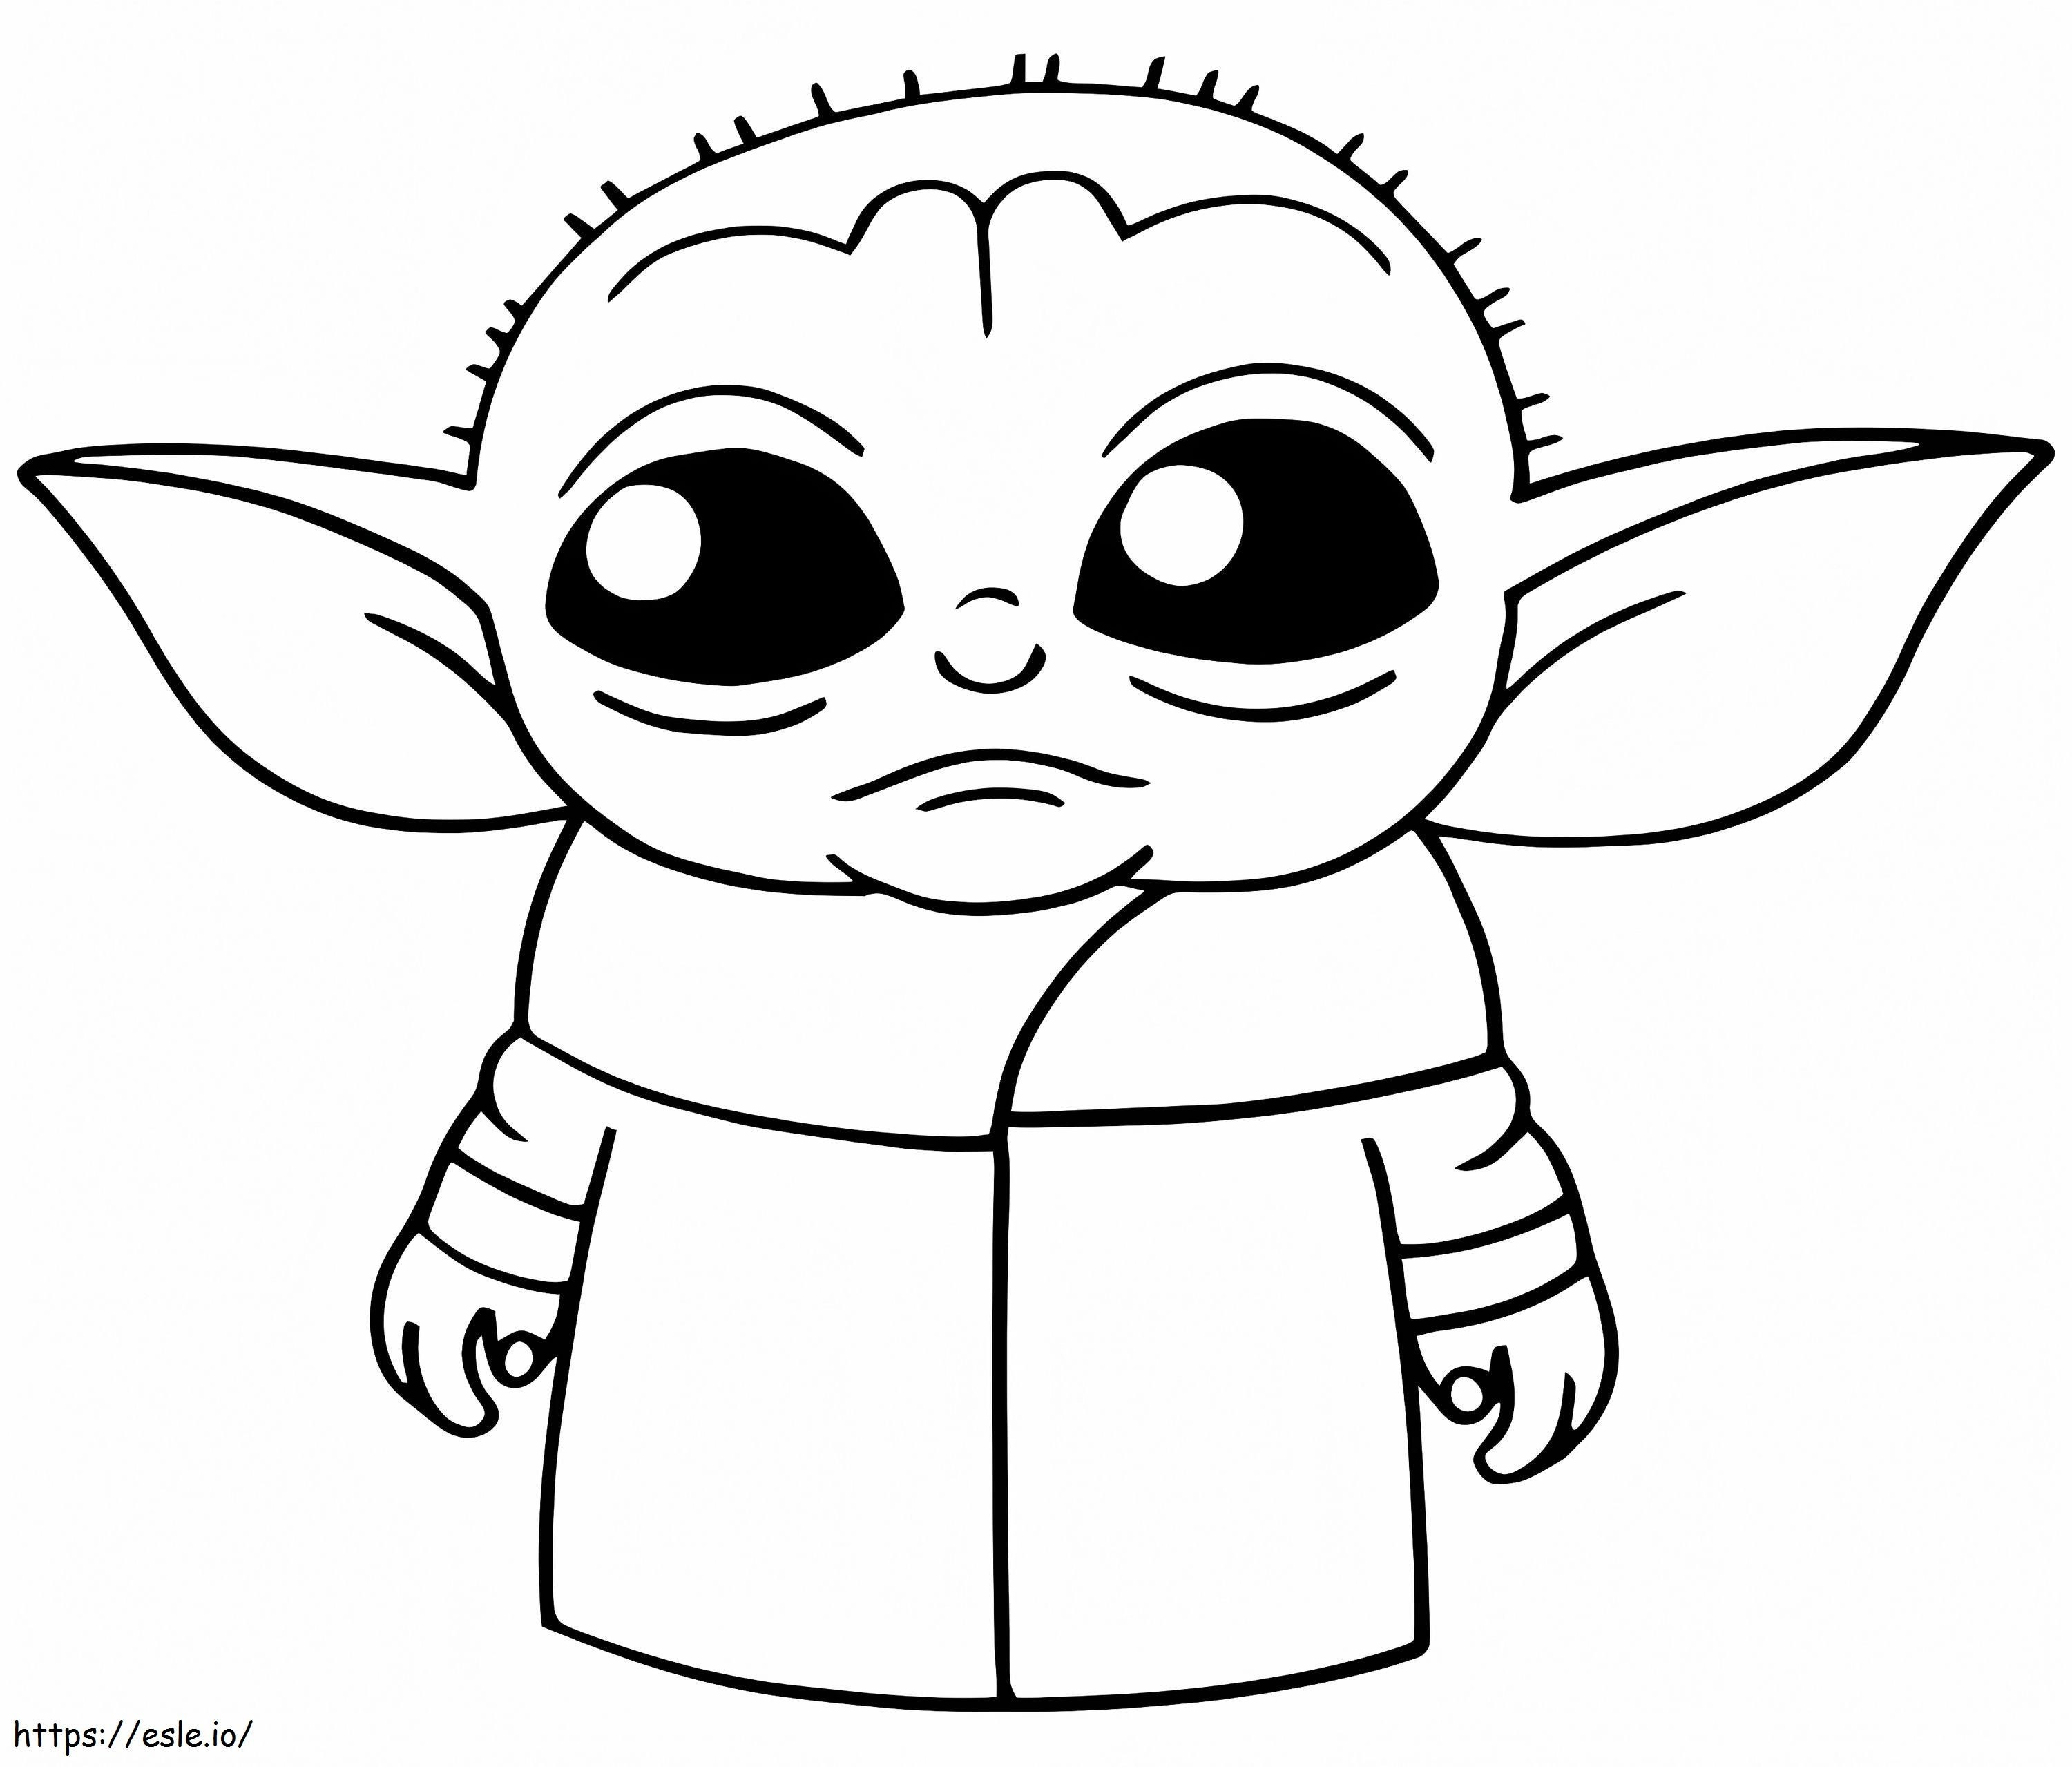 Mały Yoda jest smutny kolorowanka